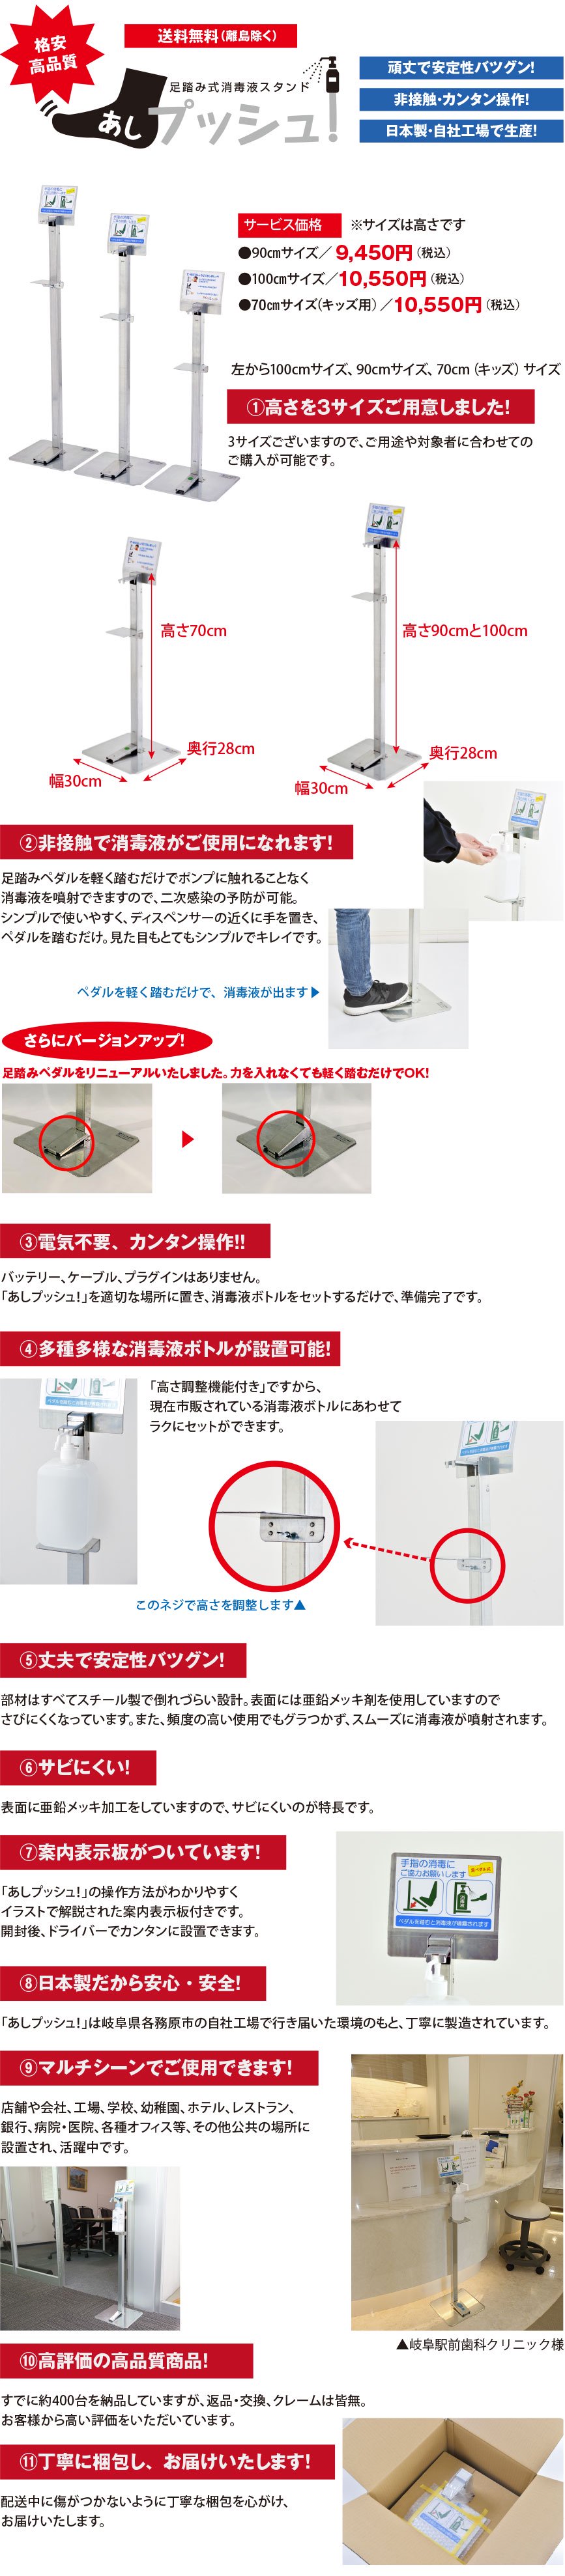 足踏み式消毒液スタンド「あしプッシュ！」90cmサイズは日本で生産し、低価格でご提供。スチール製で安定性バツグン。足でペダルを踏めば、ポンプ式消毒液ボトルから消毒液(アルコール)が噴射され、非接触で衛生的。高さ調節も可能で、市販の消毒液であればほとんどが設置可能。